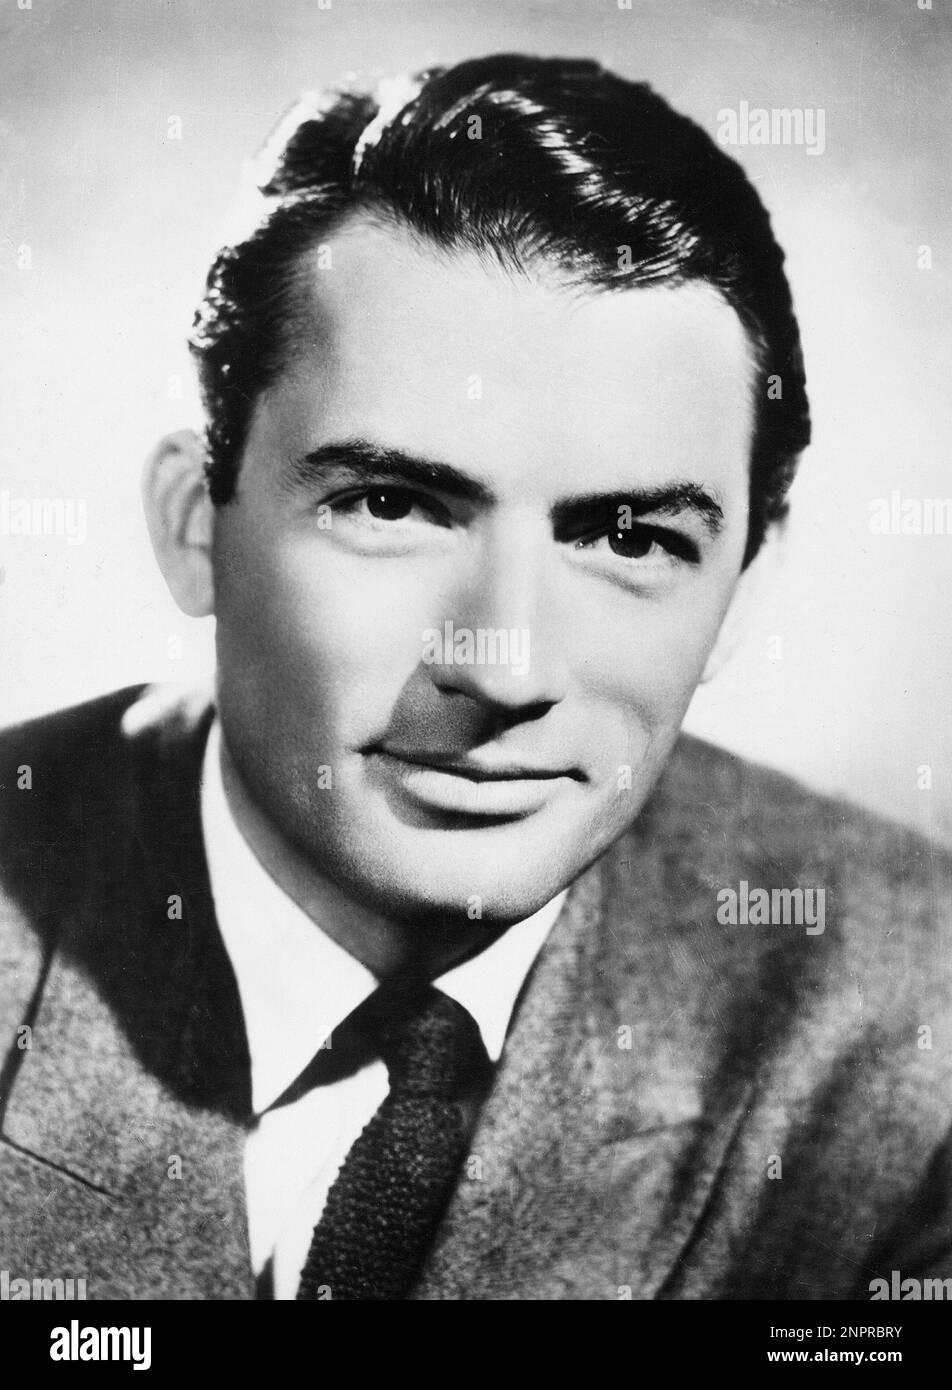 1952 c. : The movie actor GREGORY PECK ( La Jolla , CA 5 april 1916 - Los Angeles , CA 12 june 2003 ) , pubblicity still  - CINEMA - ritratto - portrait - colletto - collar - tie - cravatta ----  Archivio GBB Stock Photo